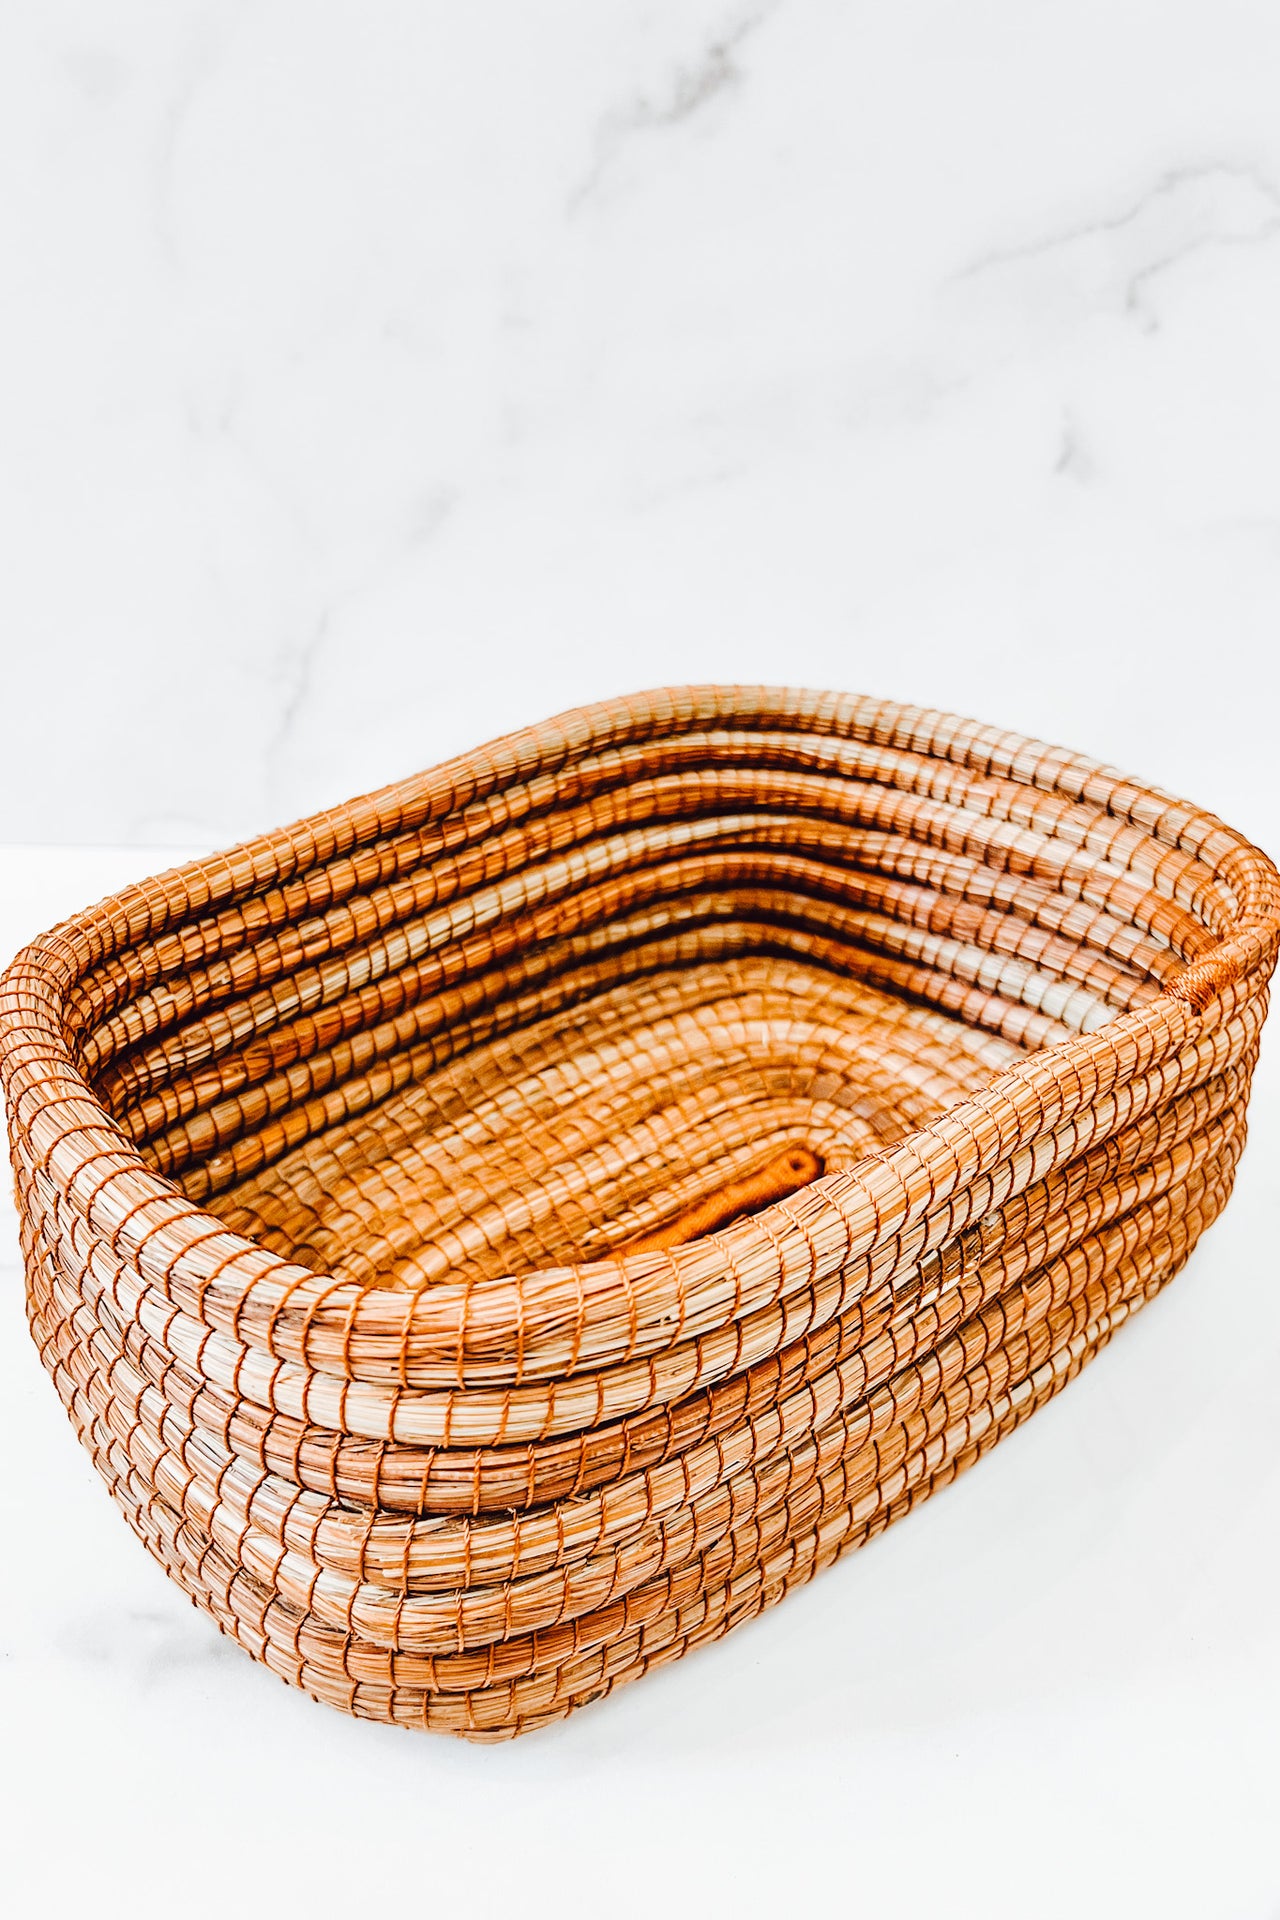 Rectangular Pine Needles Basket